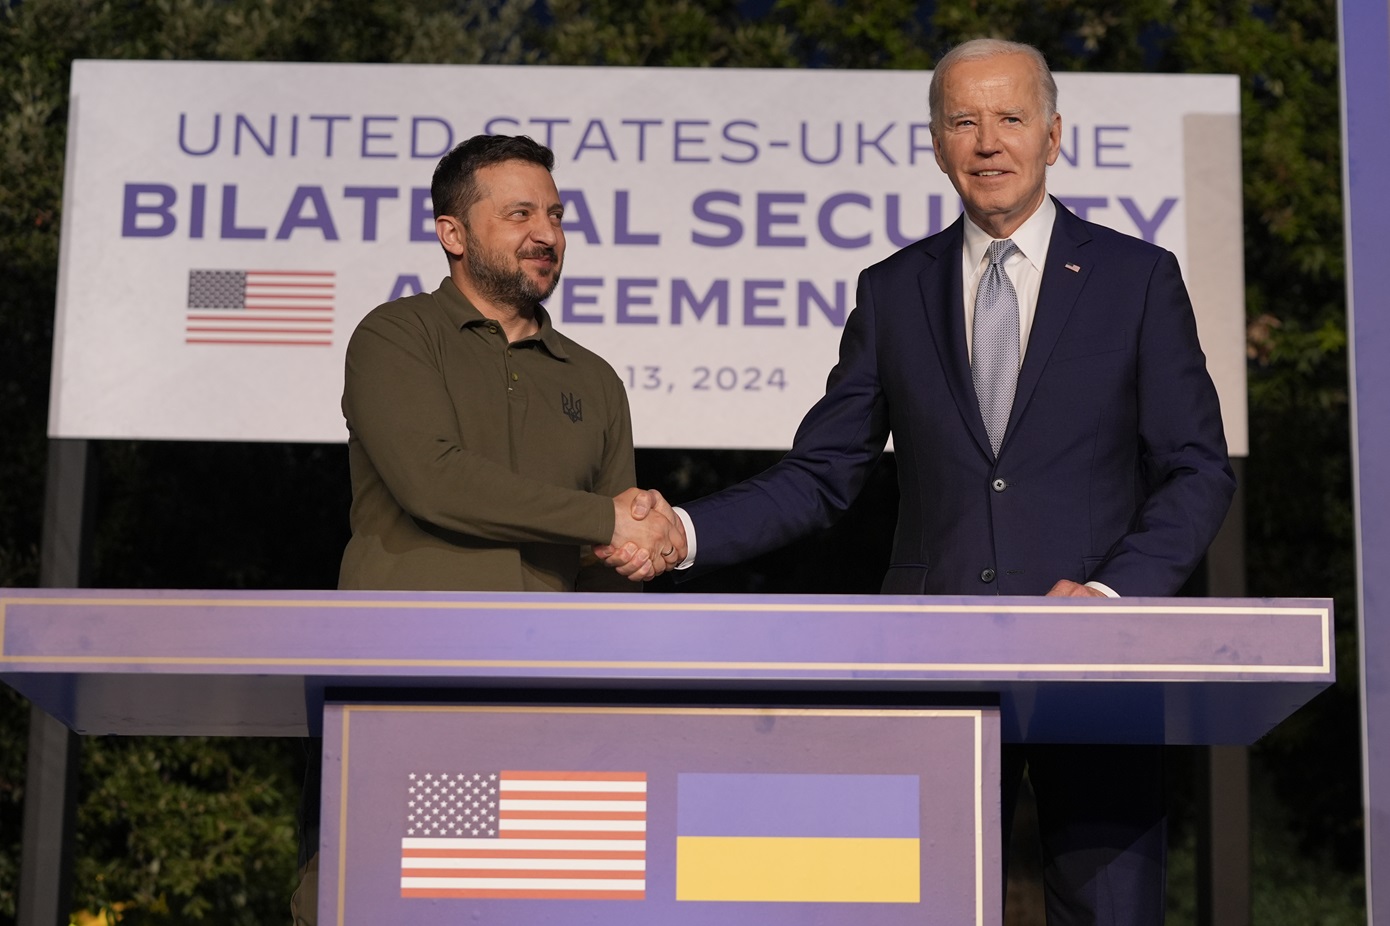 ΗΠΑ και Ουκρανία υπέγραψαν διμερή συμφωνία για την ασφάλεια στη σύνοδο G7 της Ιταλίας